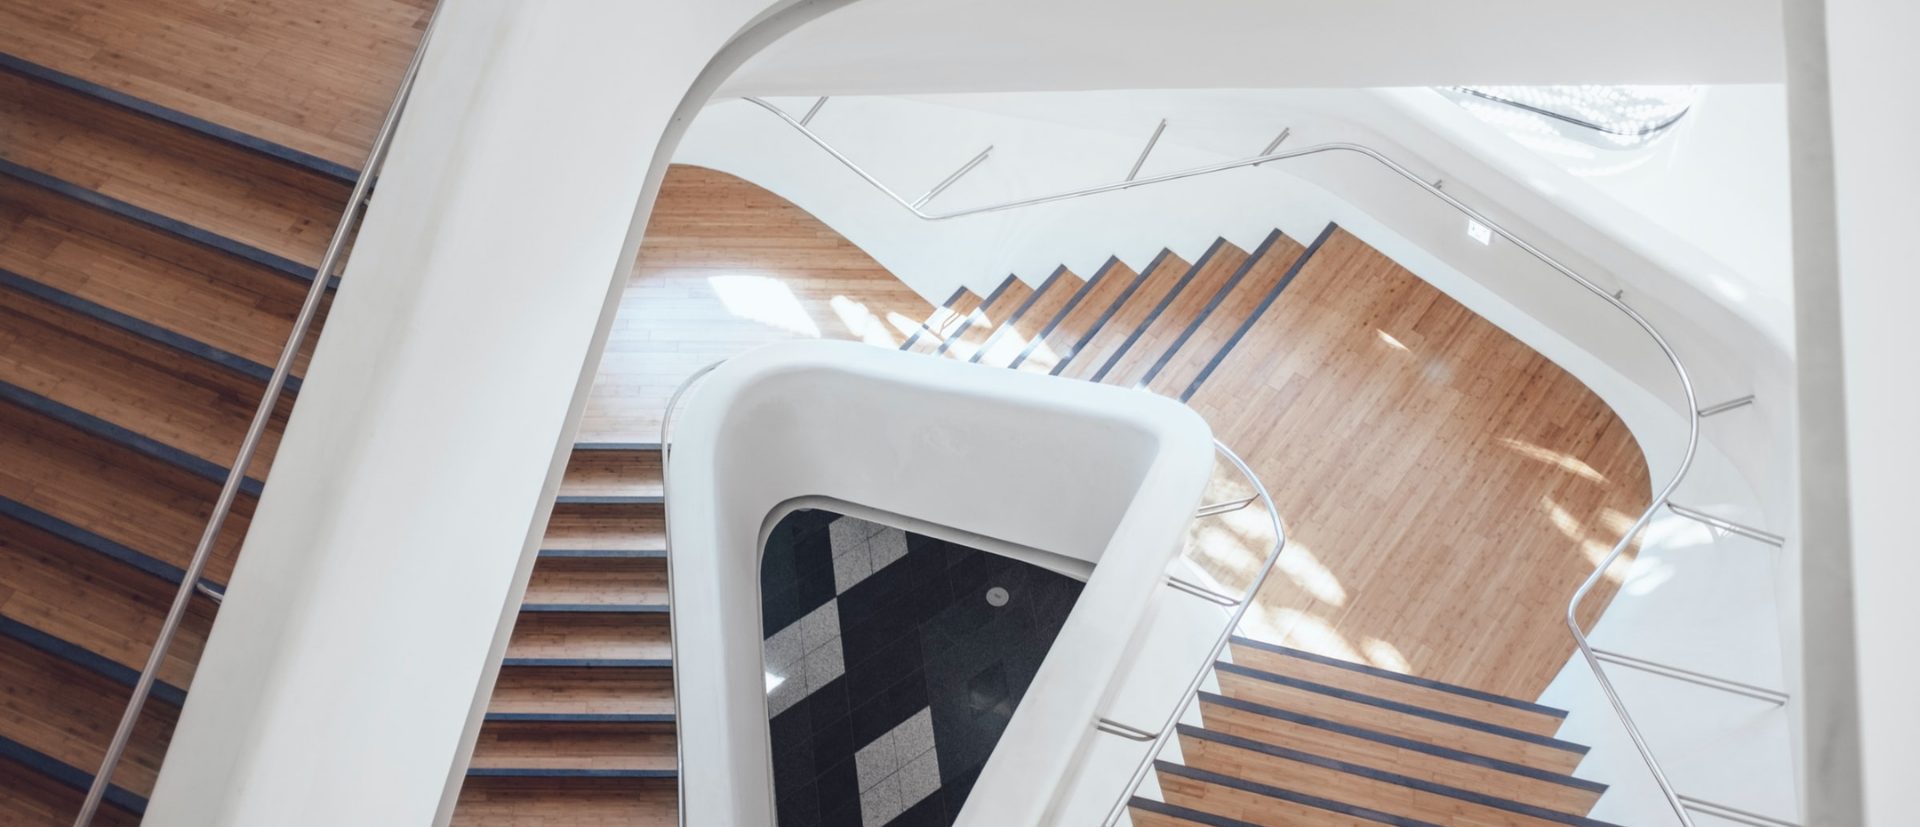 Nos conseils pour décorer votre escalier – Decoclico